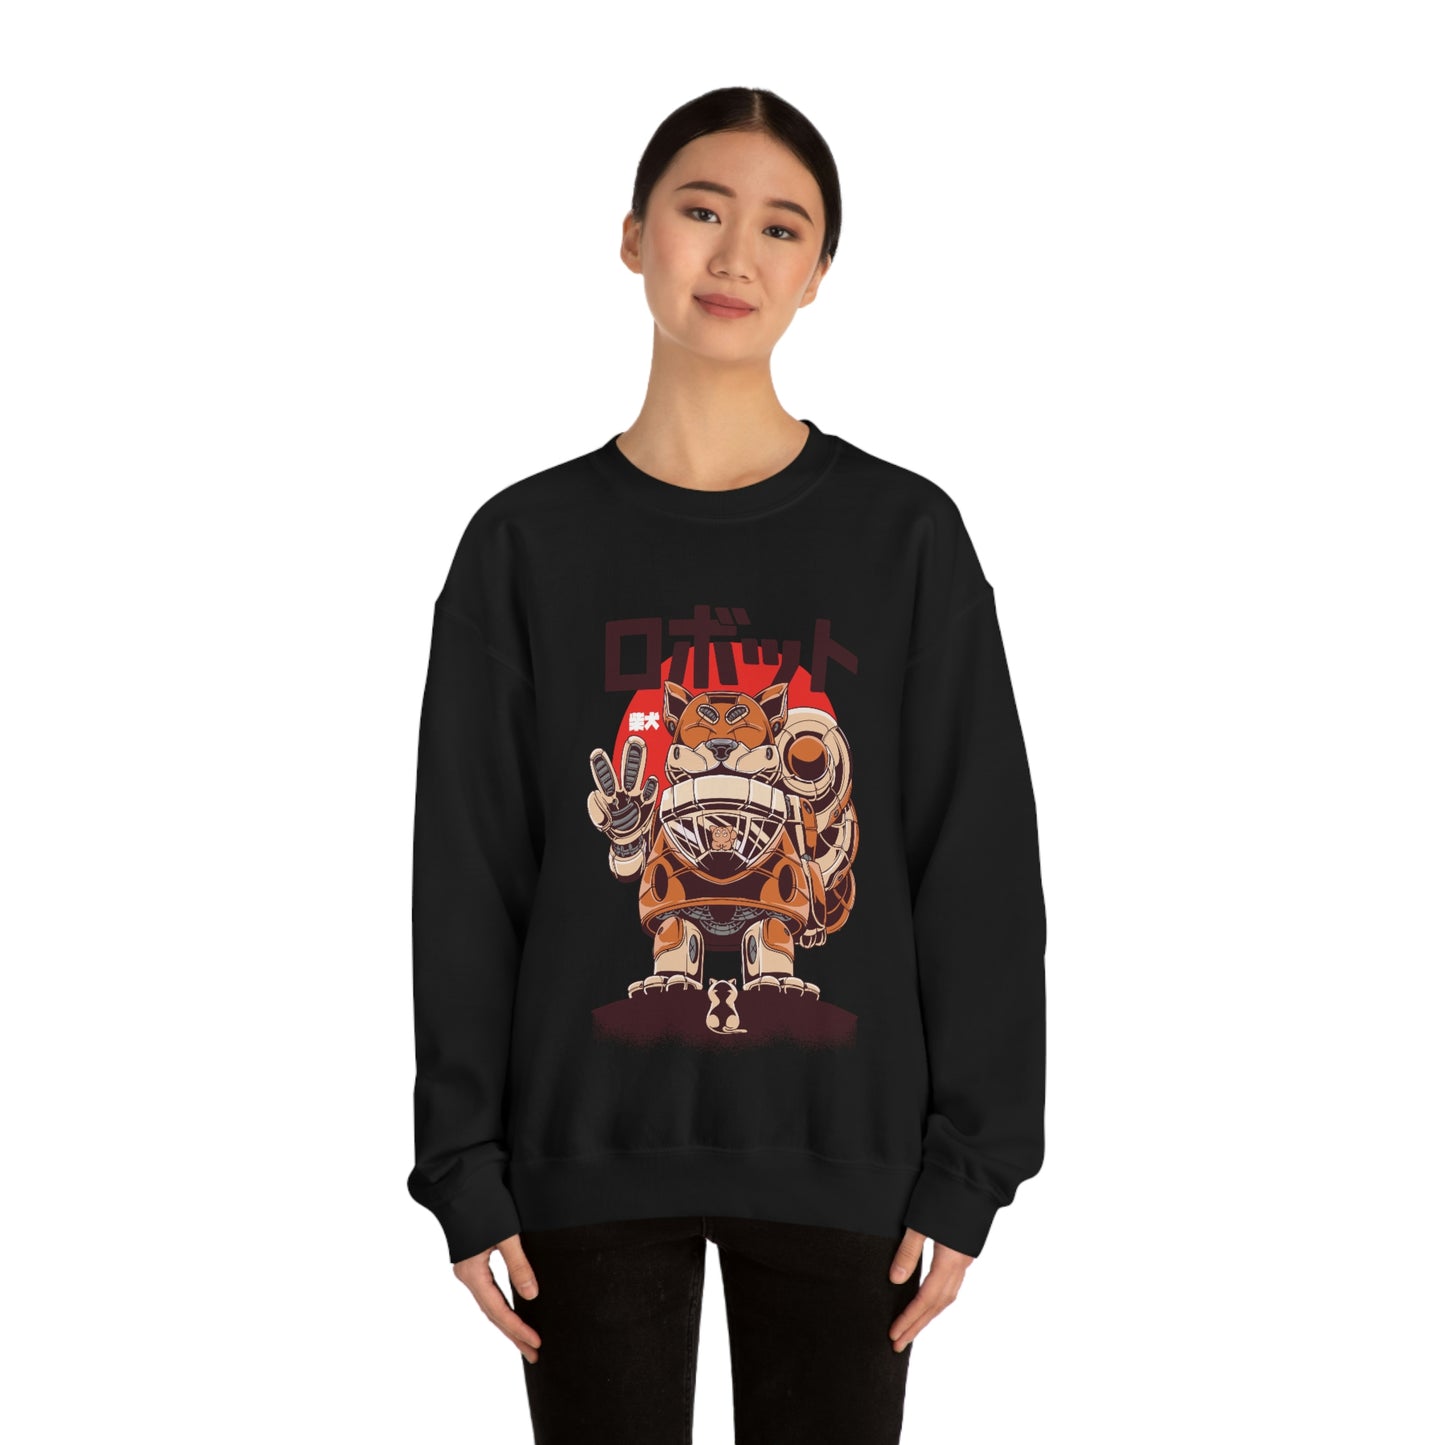 Kawaii Sweatshirt, Kawaii Clothing, Kawaii Clothes, Yami Kawaii Aesthetic, Pastel Kawaii Sweatshirt Shiba Sweater Sweatshirt